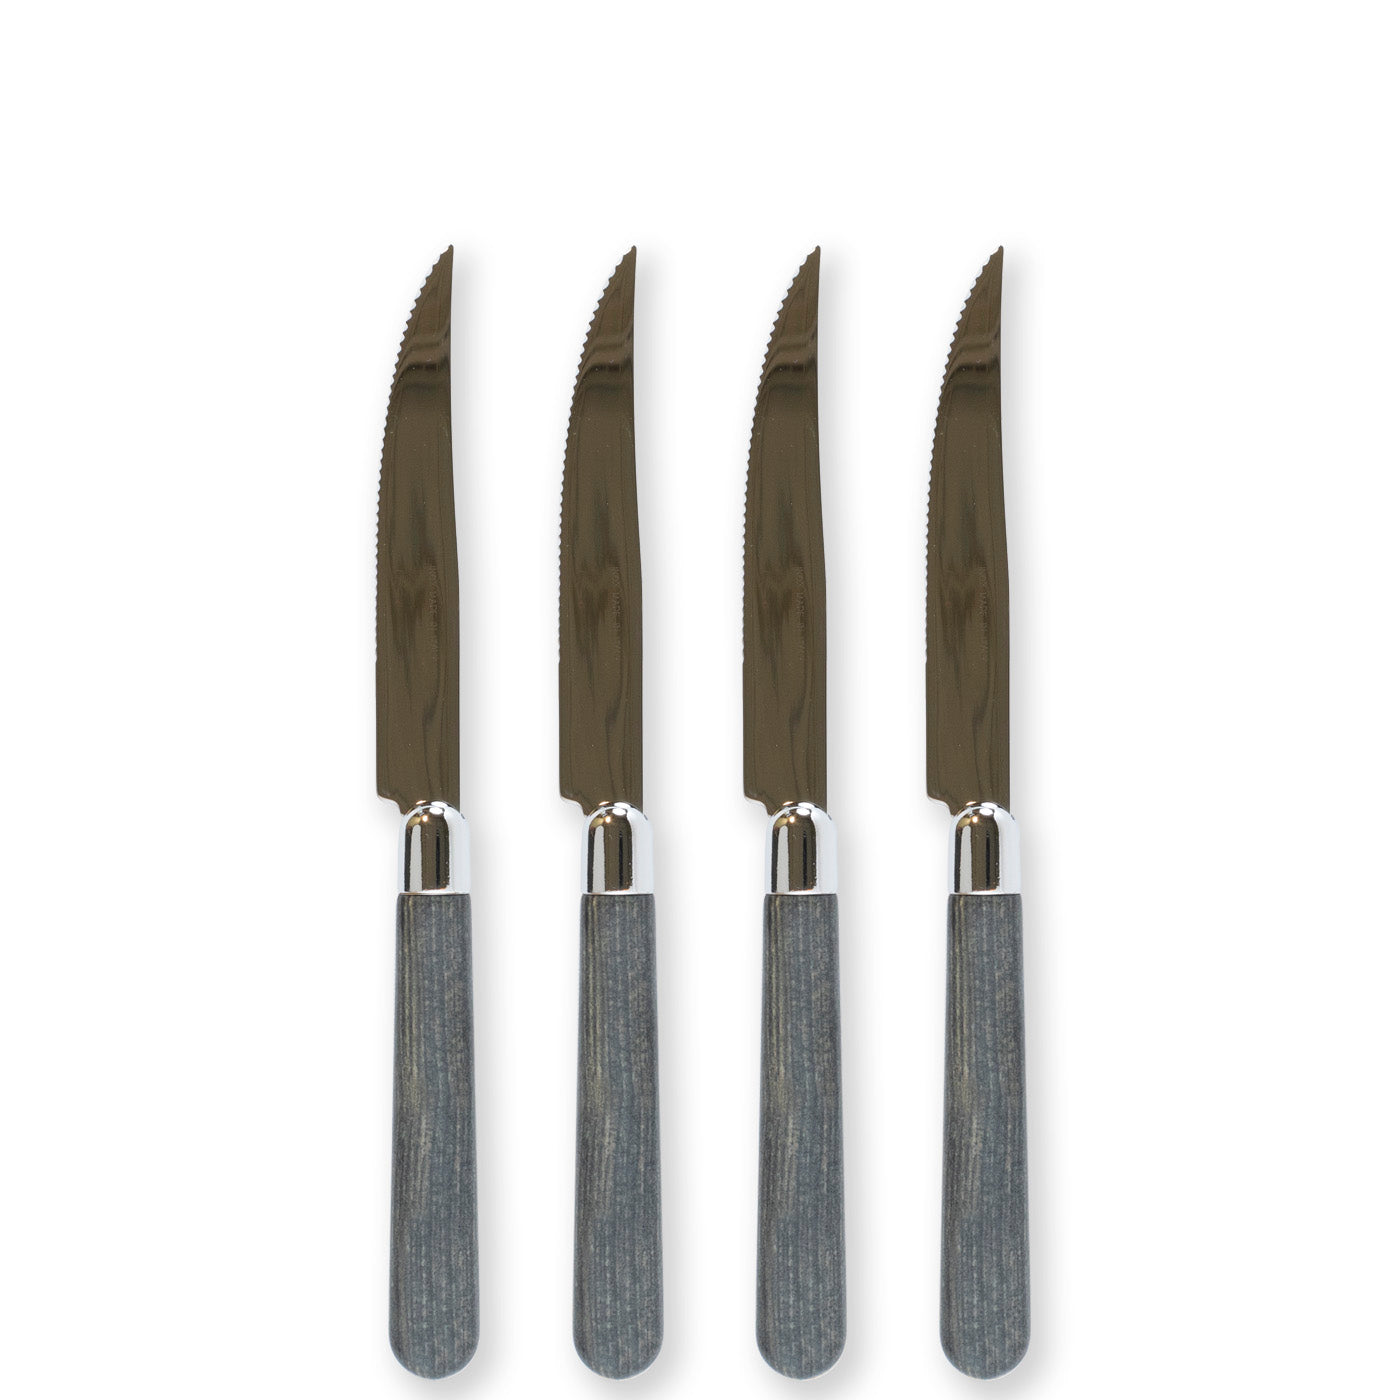 VIETRI: Albero Elm Steak Knives - Set of 4 - Artistica.com